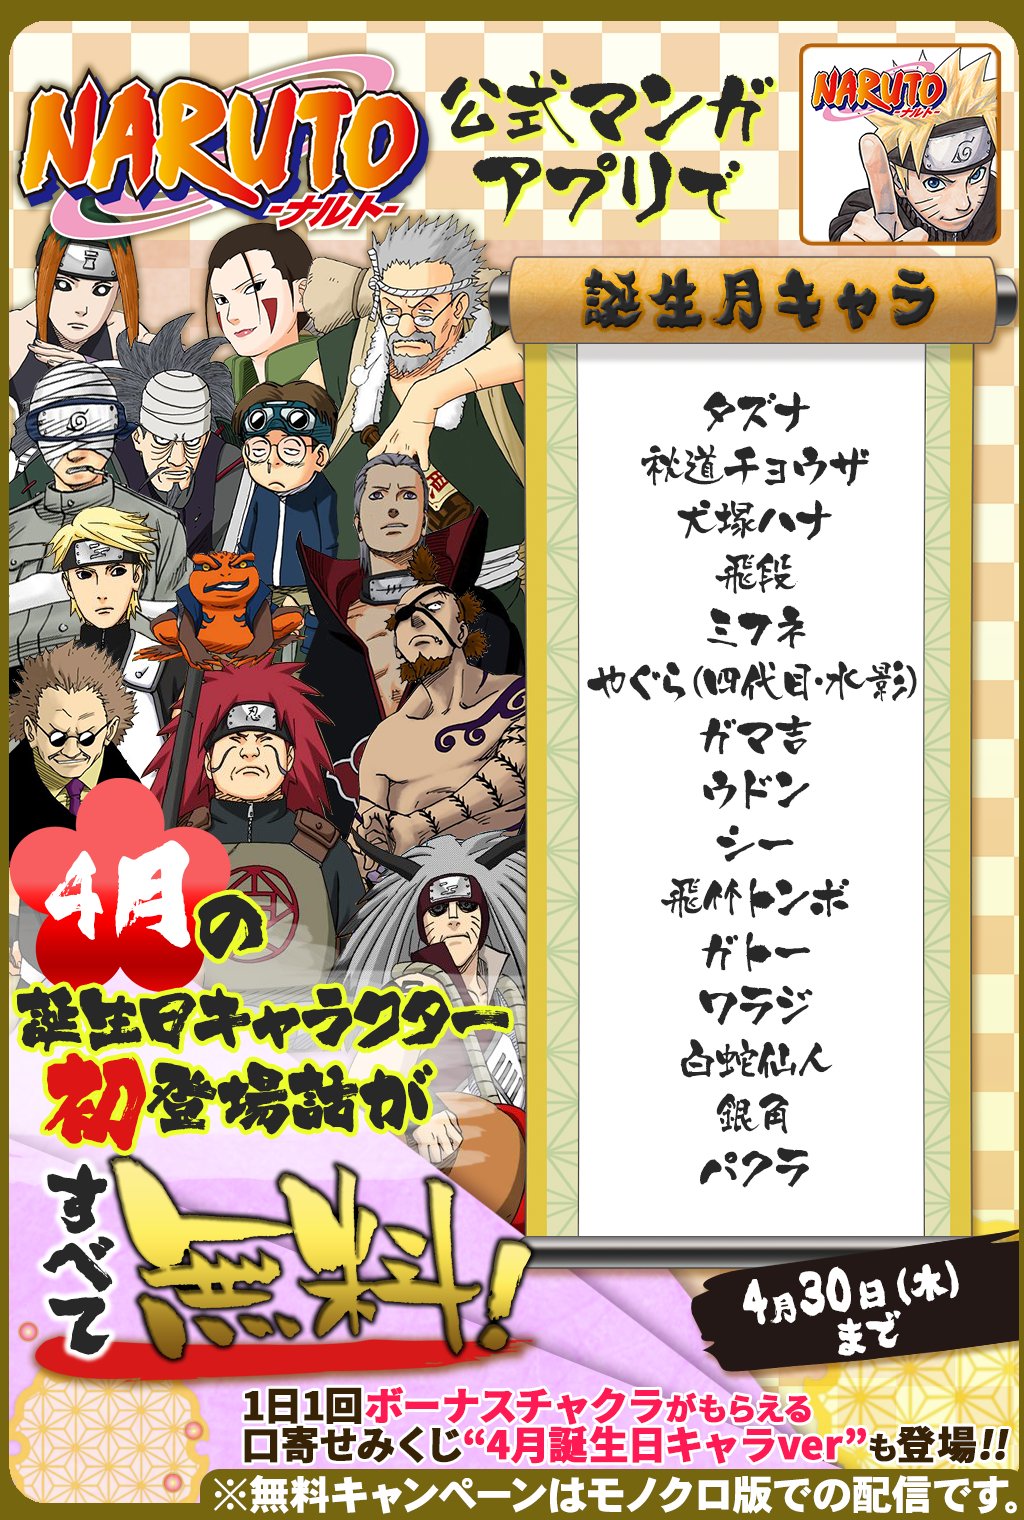 少年ジャンプニュース 公式 4 30 木 まで 毎日1話以上読める Naruto ナルト 公式漫画アプリで 4月誕生日キャラ特集 開催中 4月に誕生日を迎えるキャラクターの初登場話が無料で読めるぞ Narutoアプリ T Co Xcyhwdghrd T Co